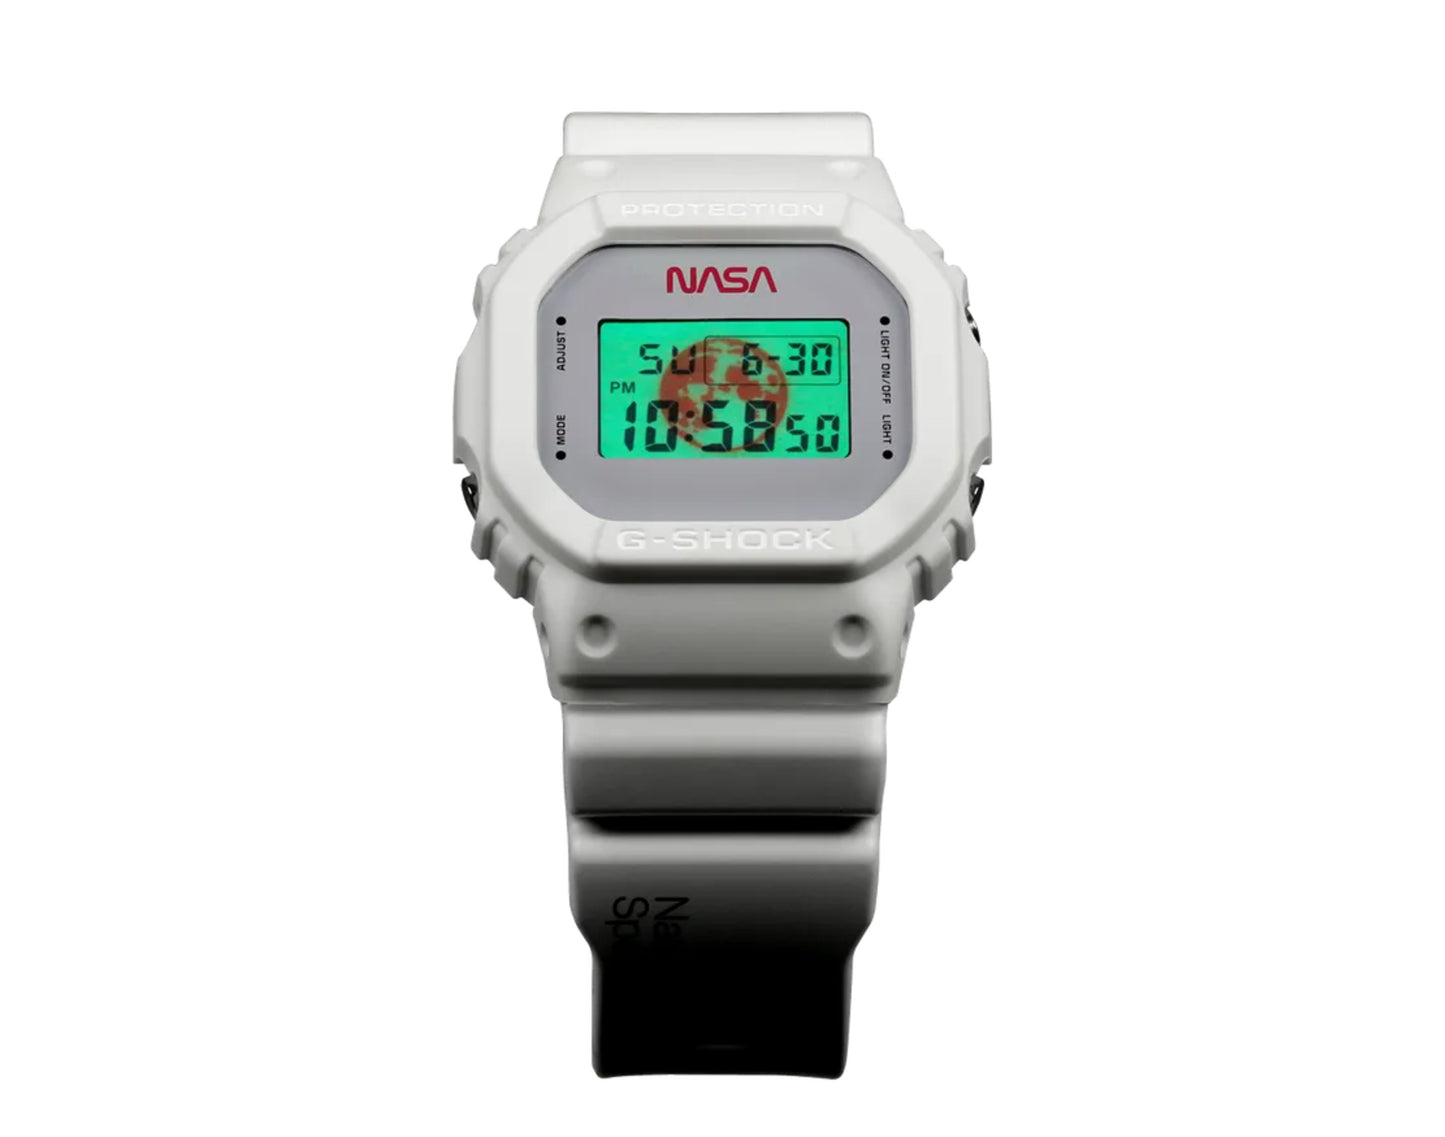 Casio G-Shock x NASA DW5600 Digital White Watch DW5600NASA-20